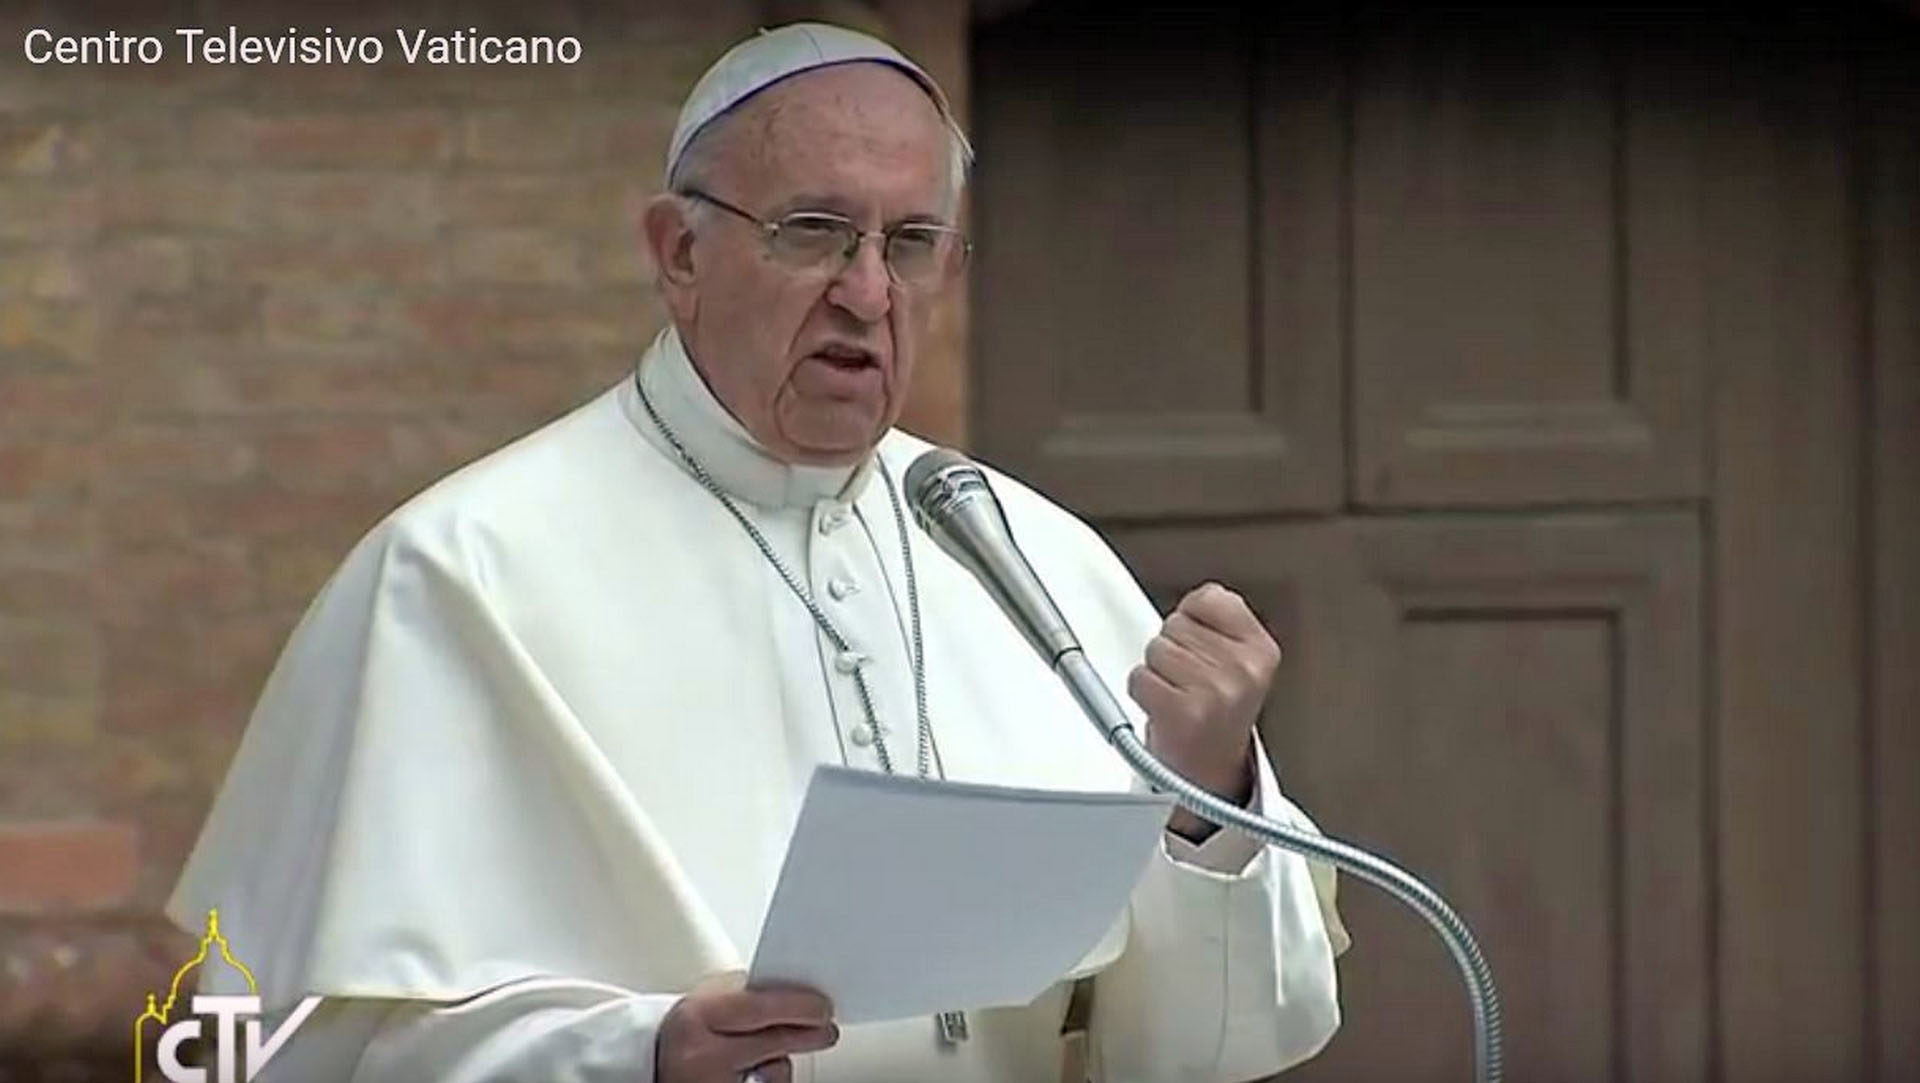 Le pape recevra la FAFCE en audience privée. (Capture-écran/CTV)